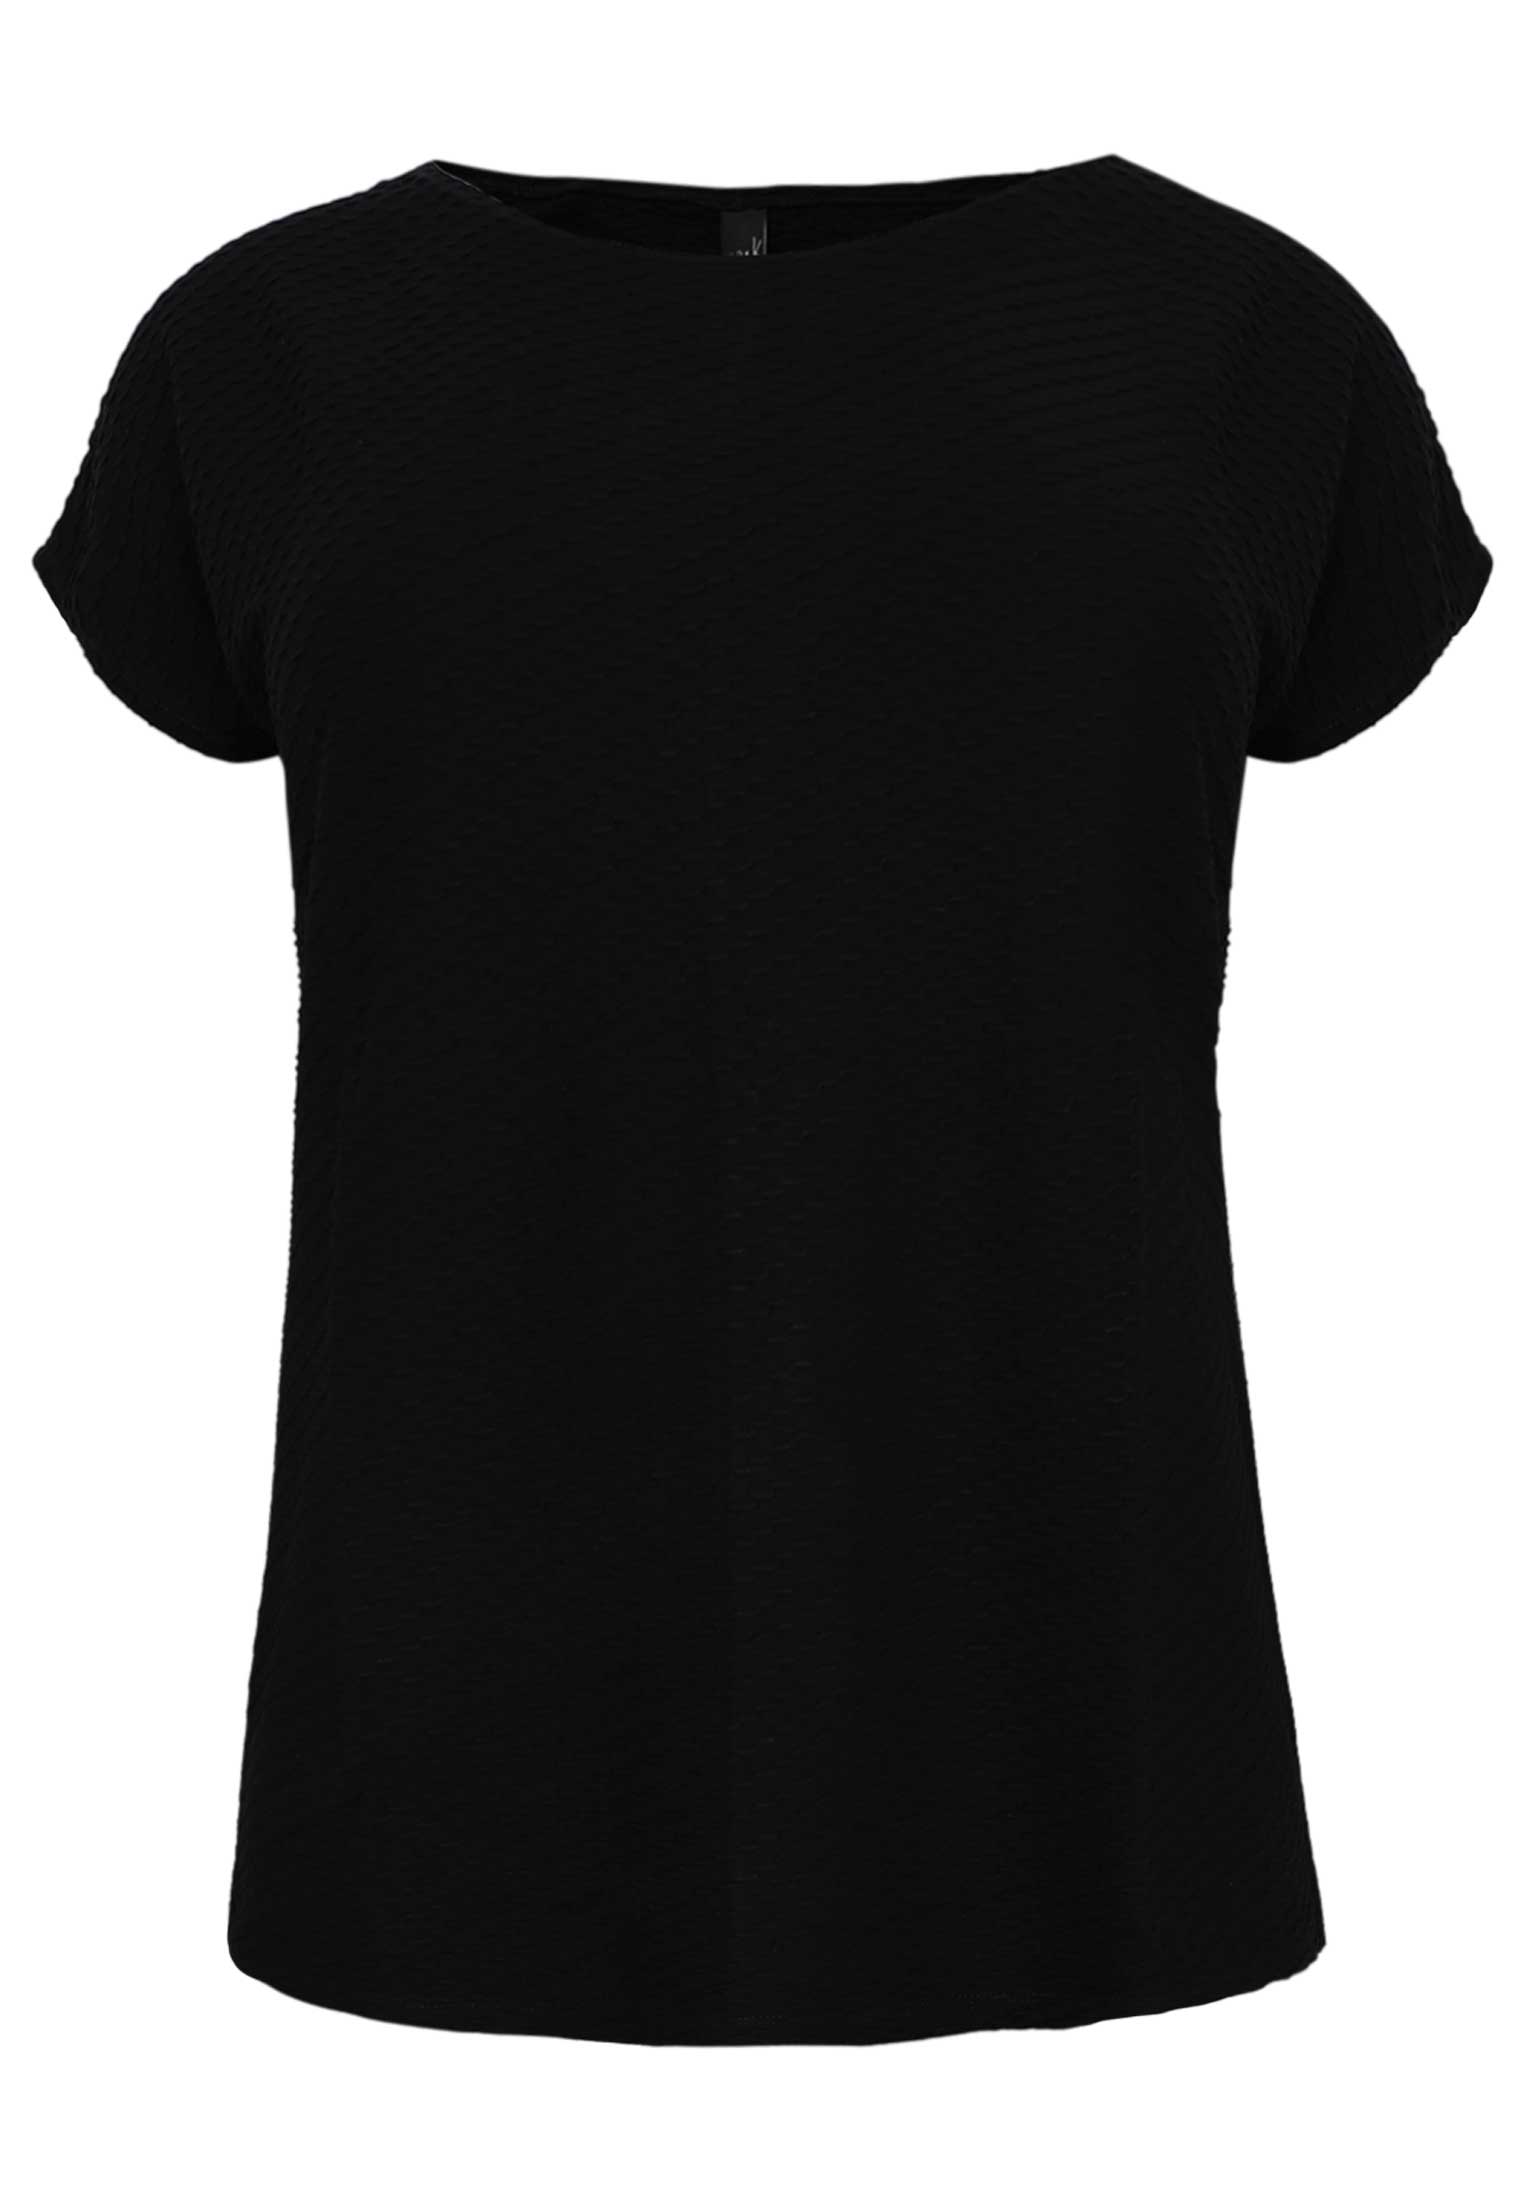 Shirt OBLIE 58/60 black